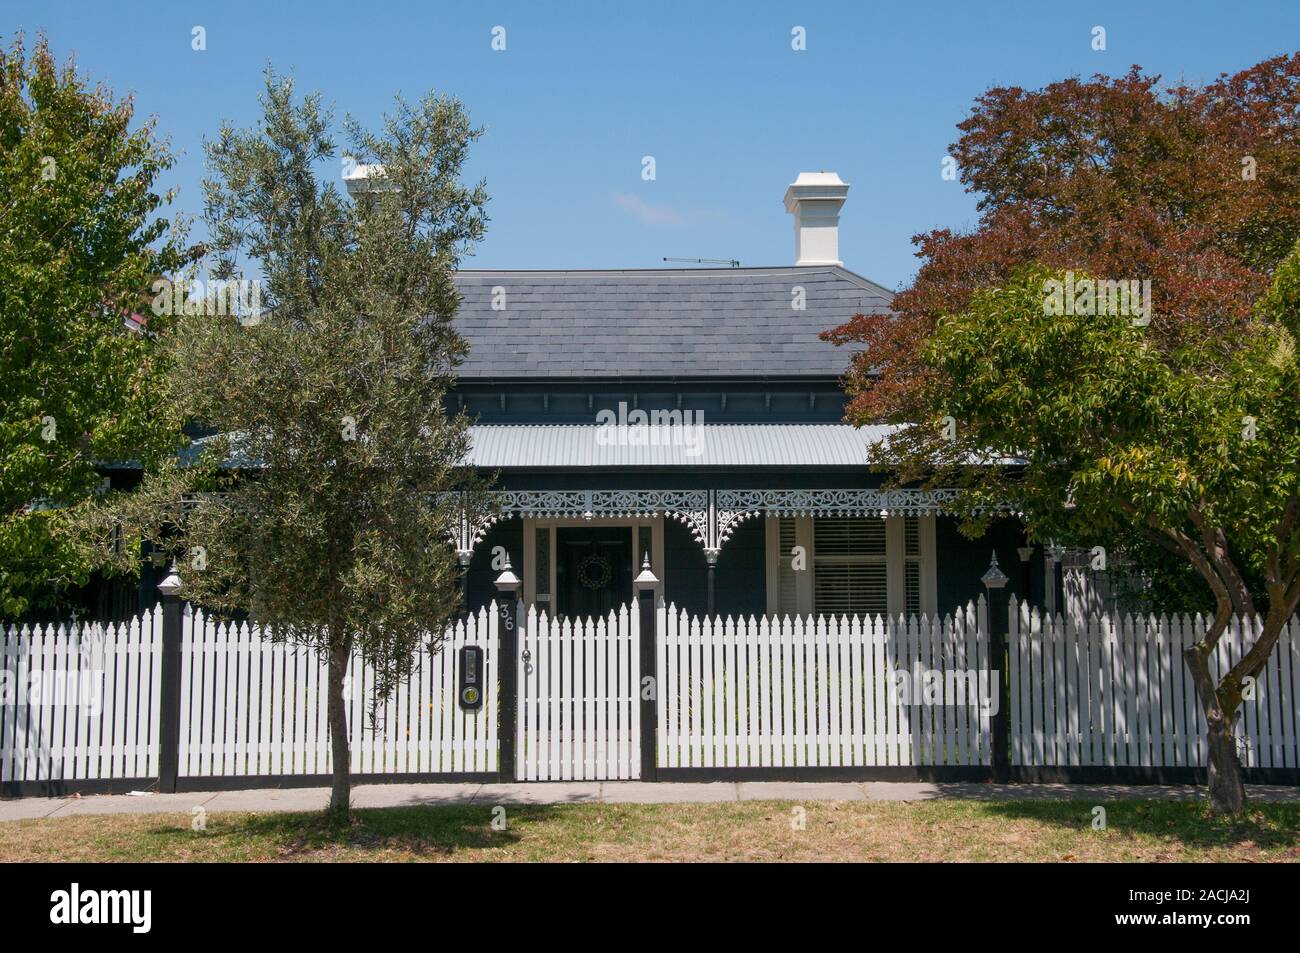 Eine authentially restaurierten Viktorianischen Holzhaus in einem Vorort von Melbourne, Australien, mit Schieferdach, Veranda, Bügeleisen lacework und Lattenzaun. Stockfoto